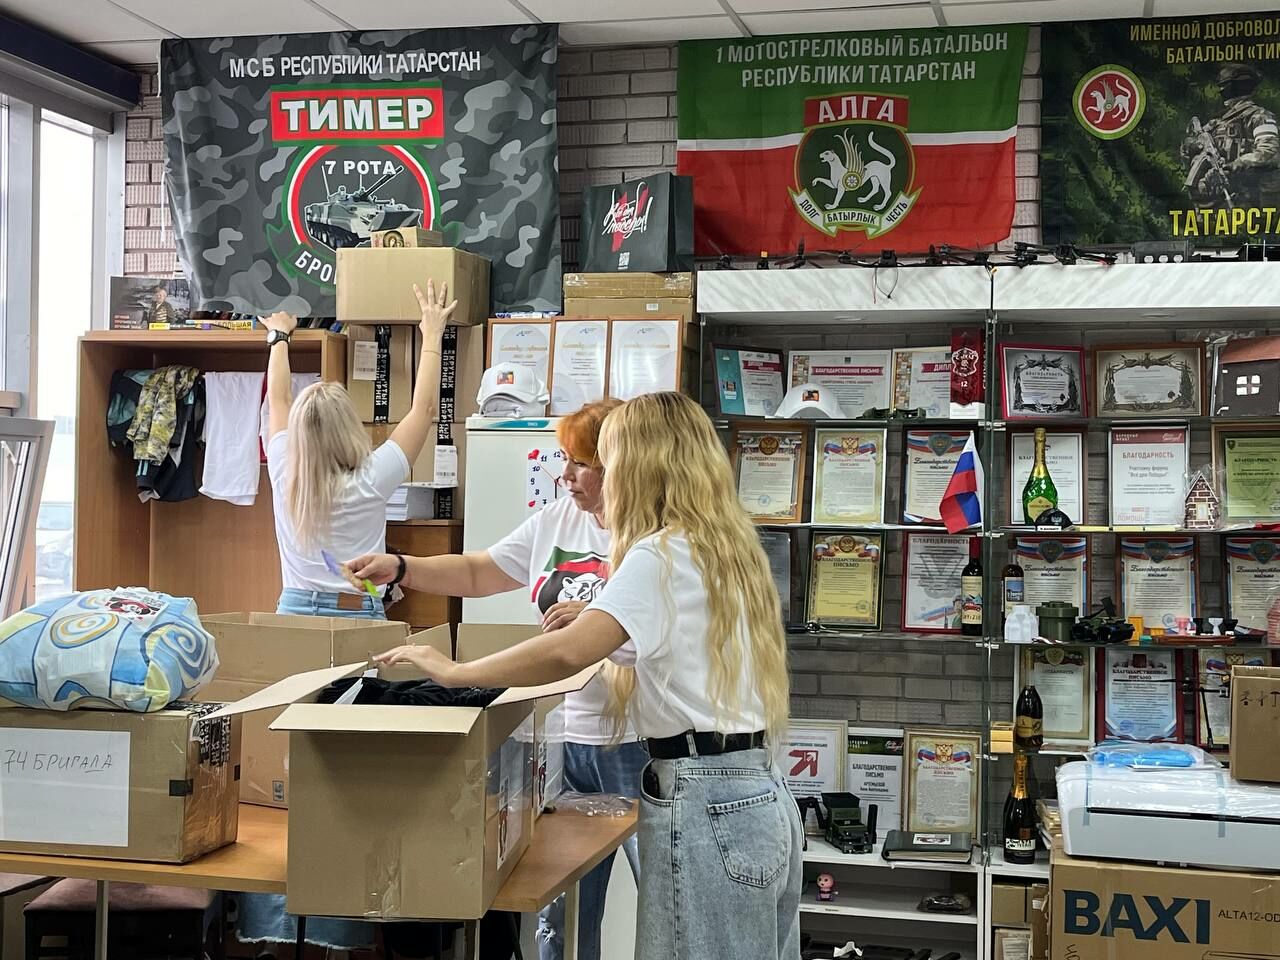 Девушки-волонтеры из Челнов доставили 400 тонн гумпомощи бойцам с начала СВО